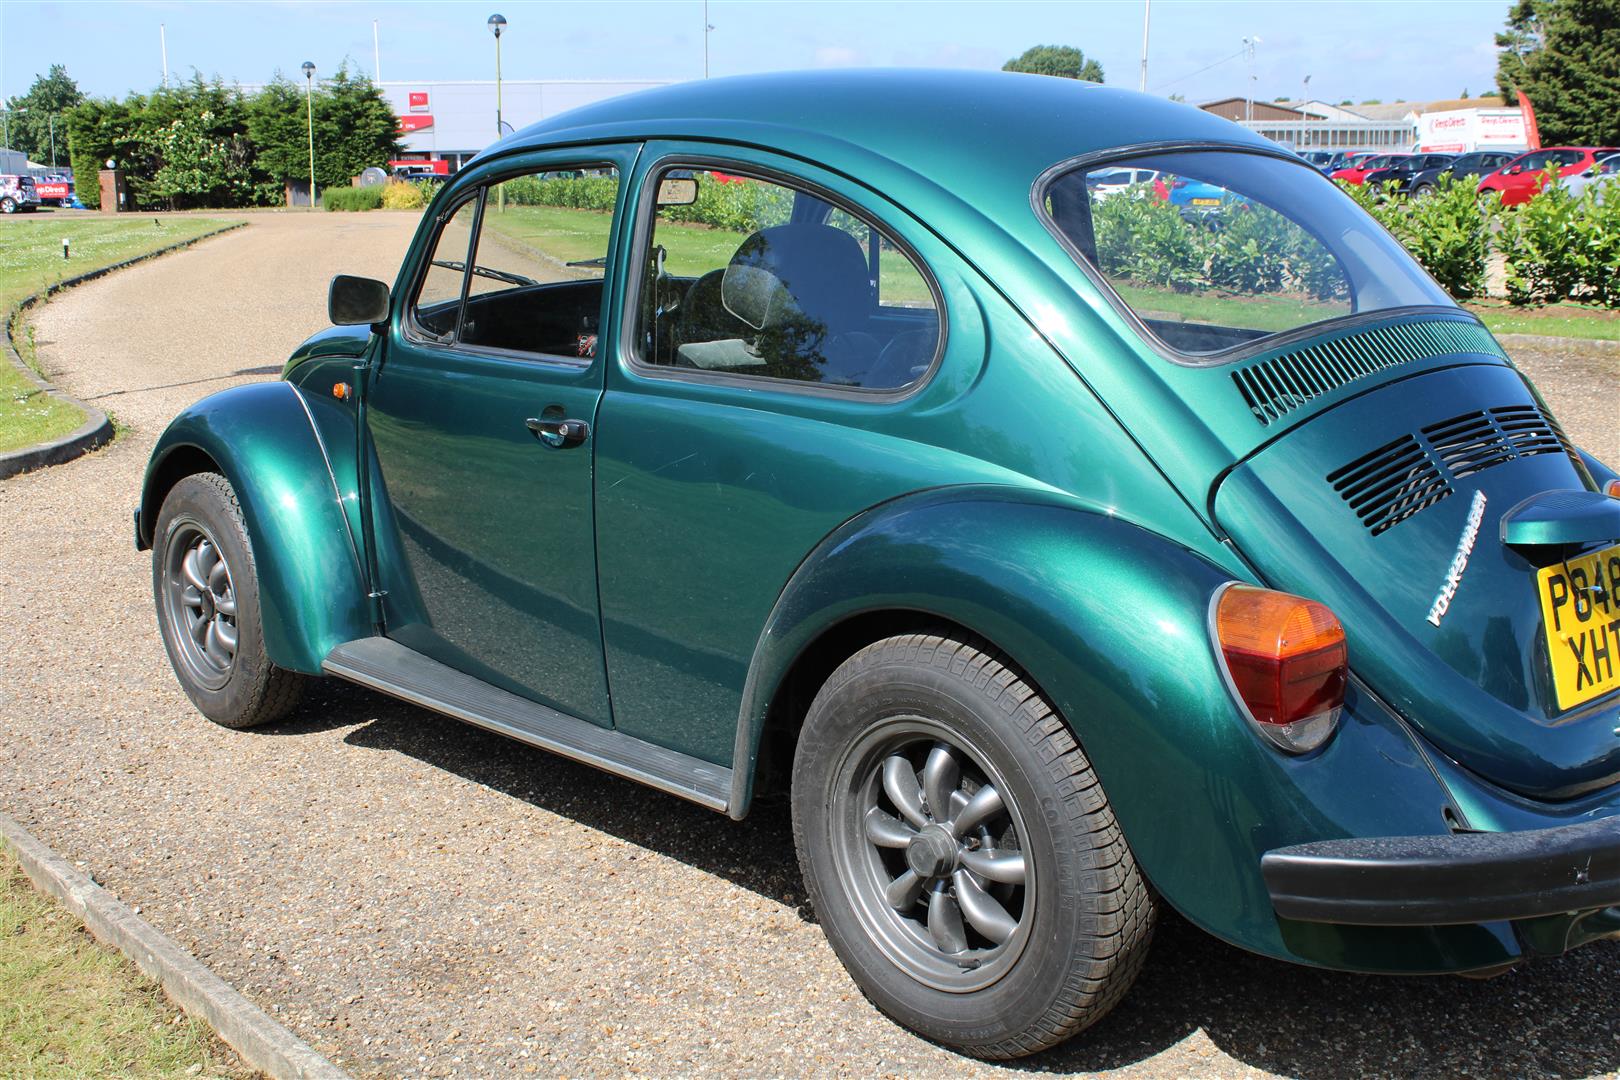 1997 VW Beetle 1600 - Image 12 of 18